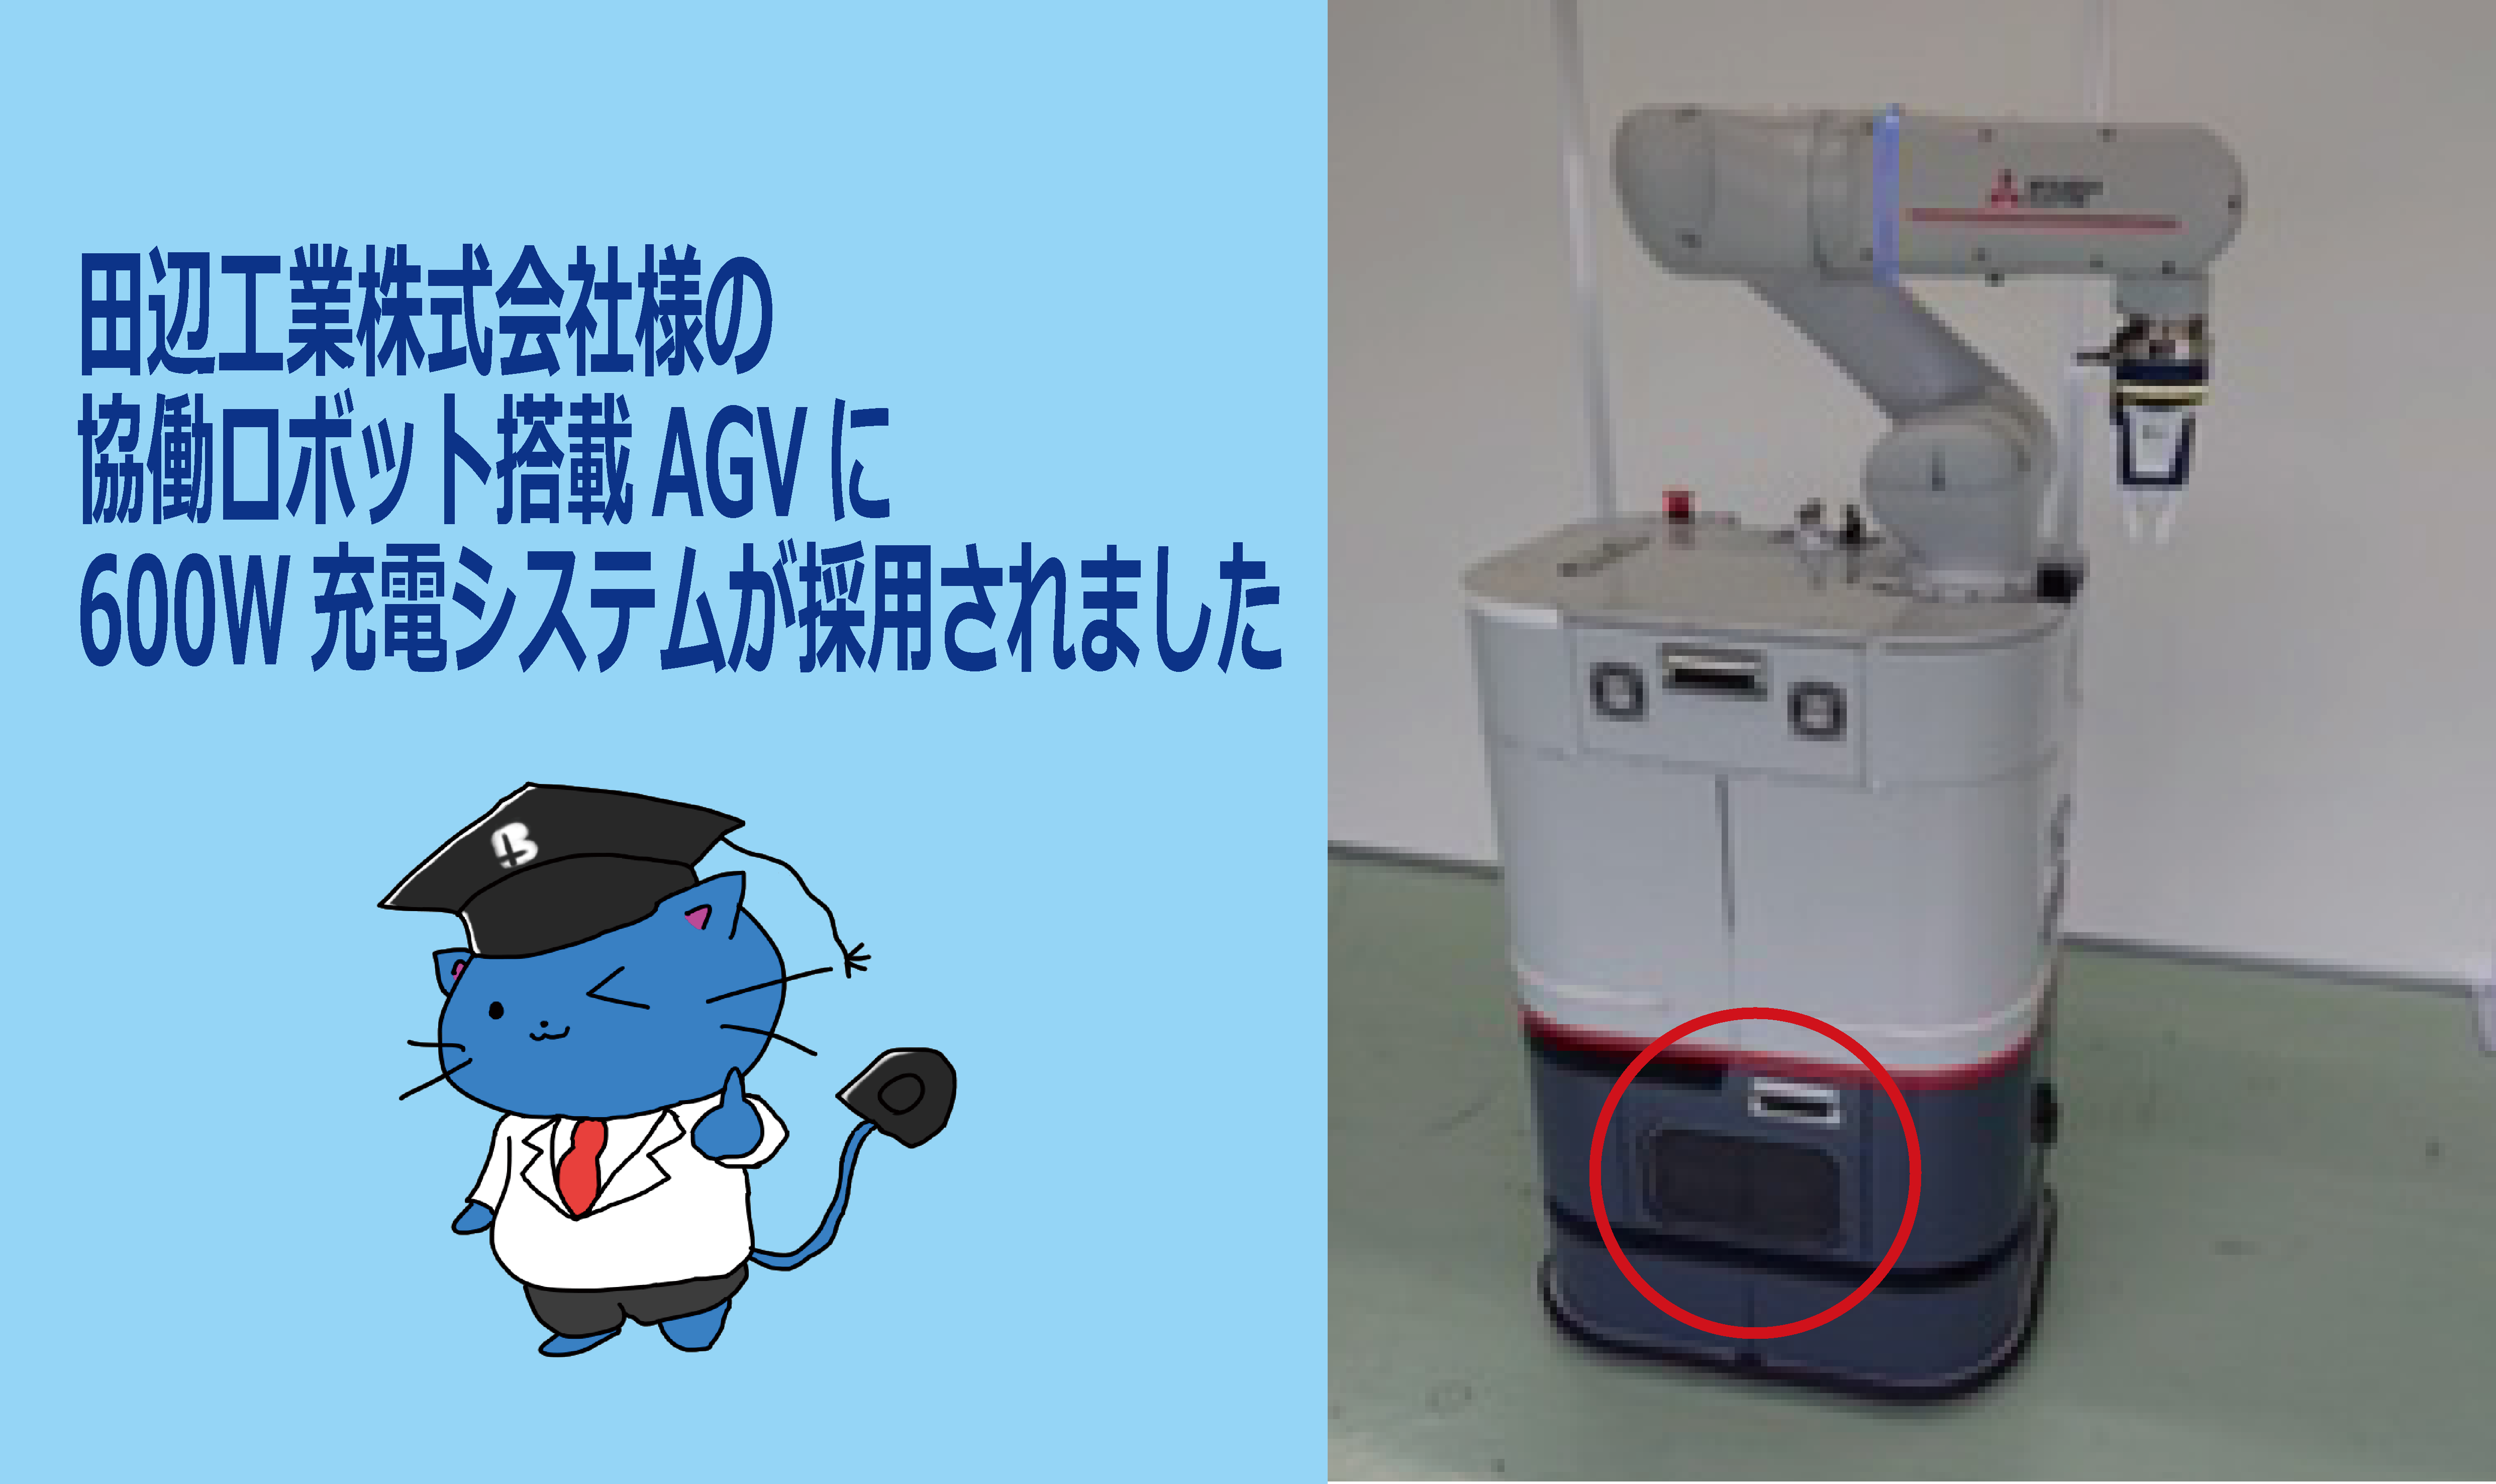 田辺工業株式会社様の協働ロボット搭載AGVに600W充電システムを導入した事例をご紹介します